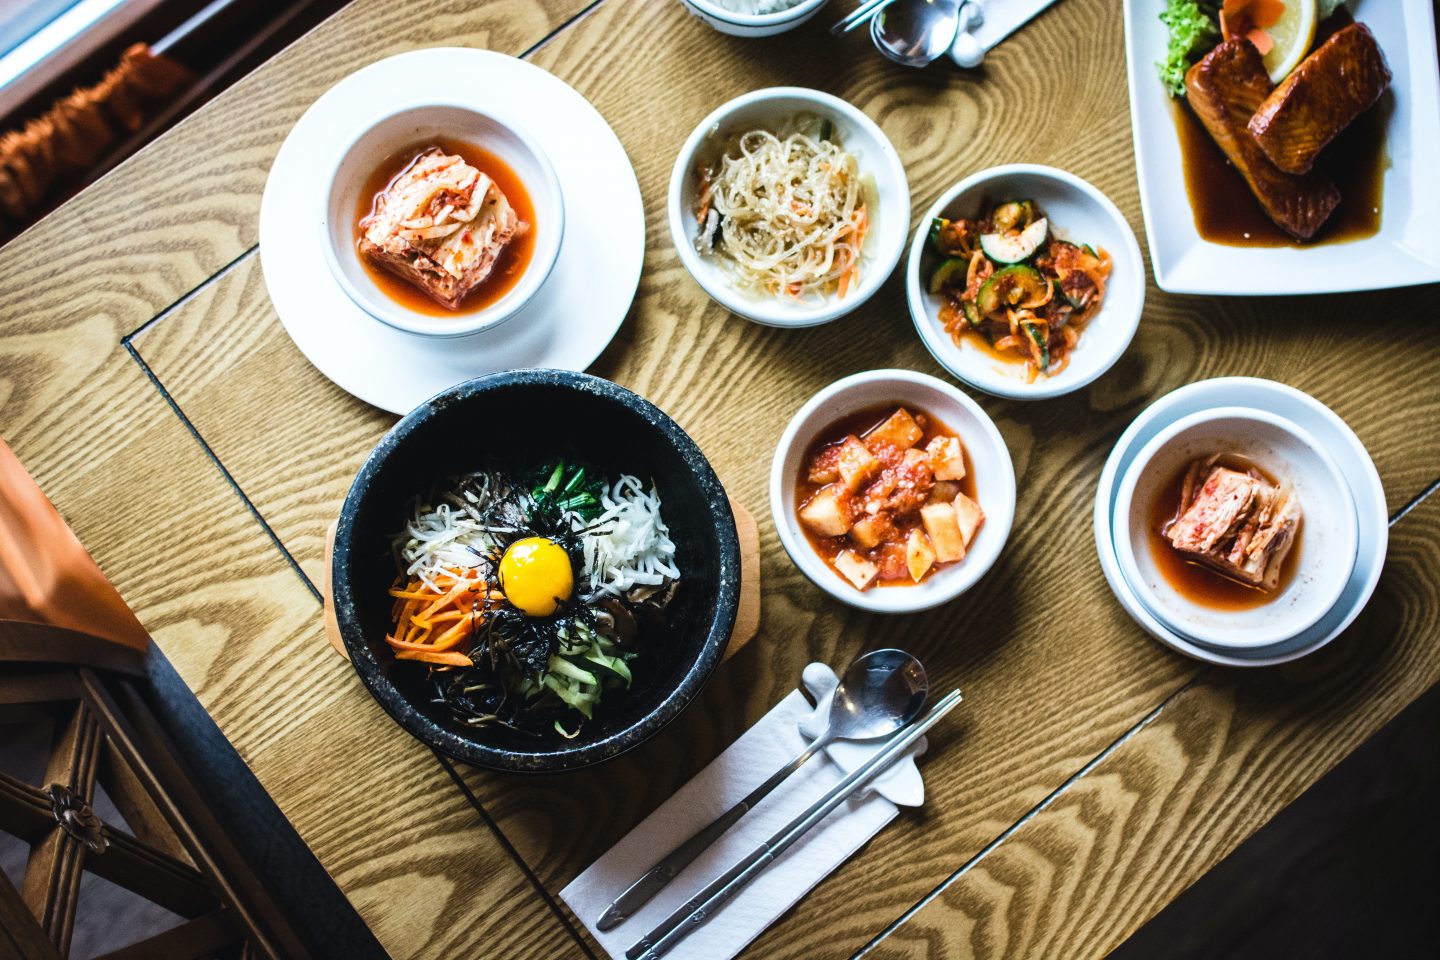 Unique Korean Cuisine: An Overview Before You Visit